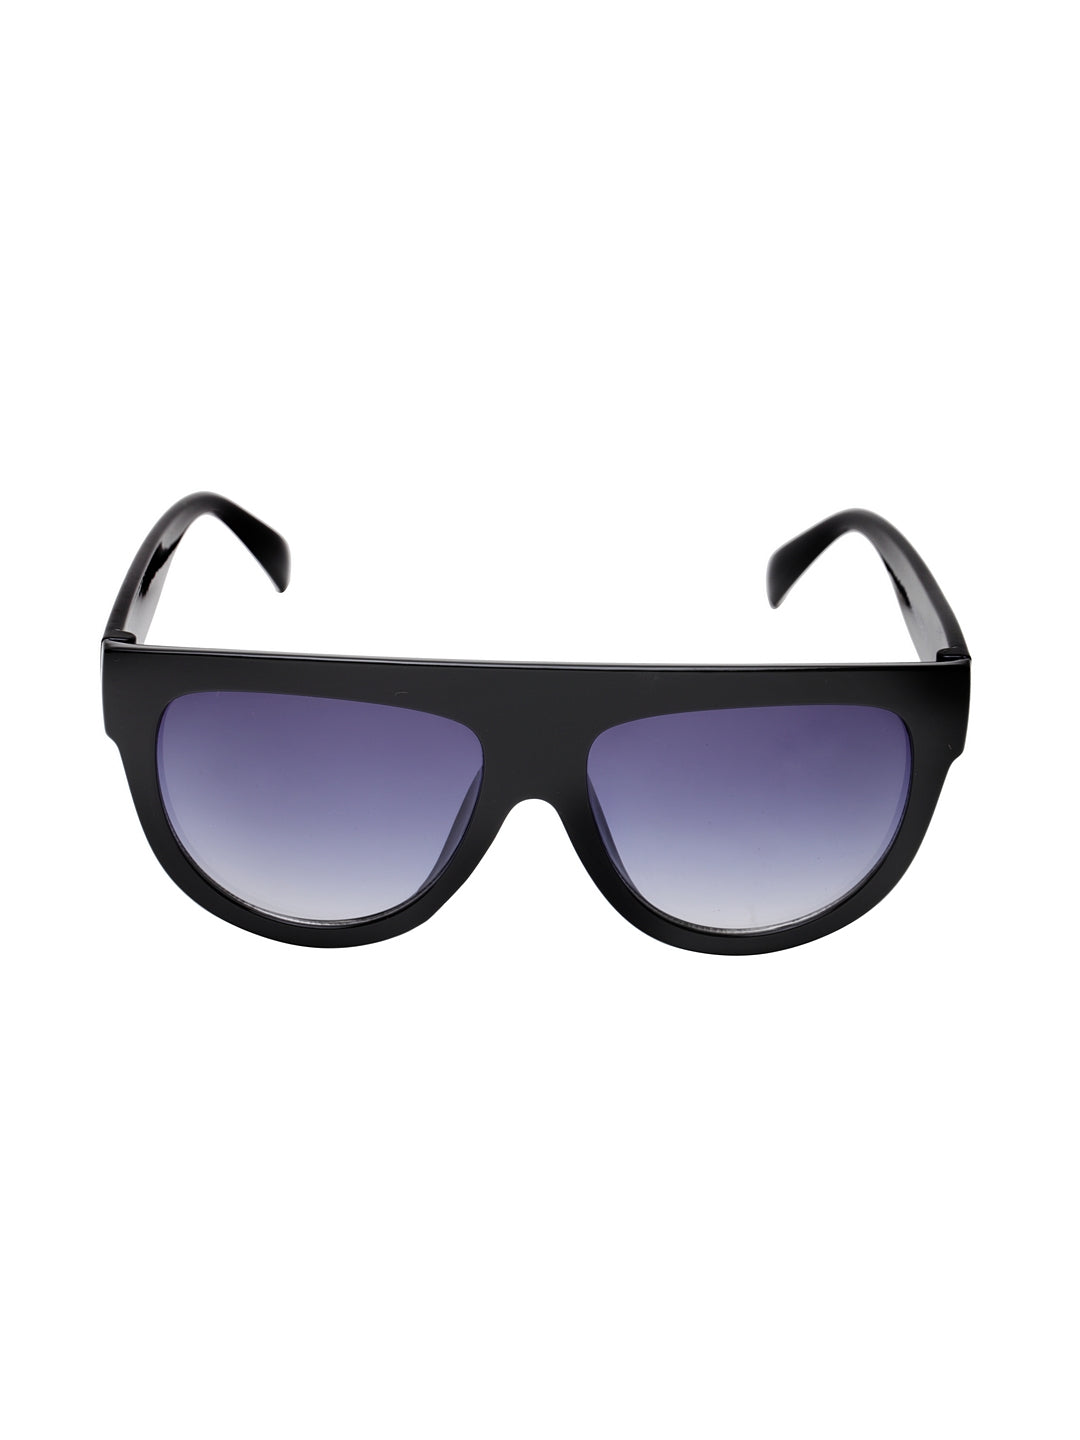 Flache Cateye-Sonnenbrille für Damen